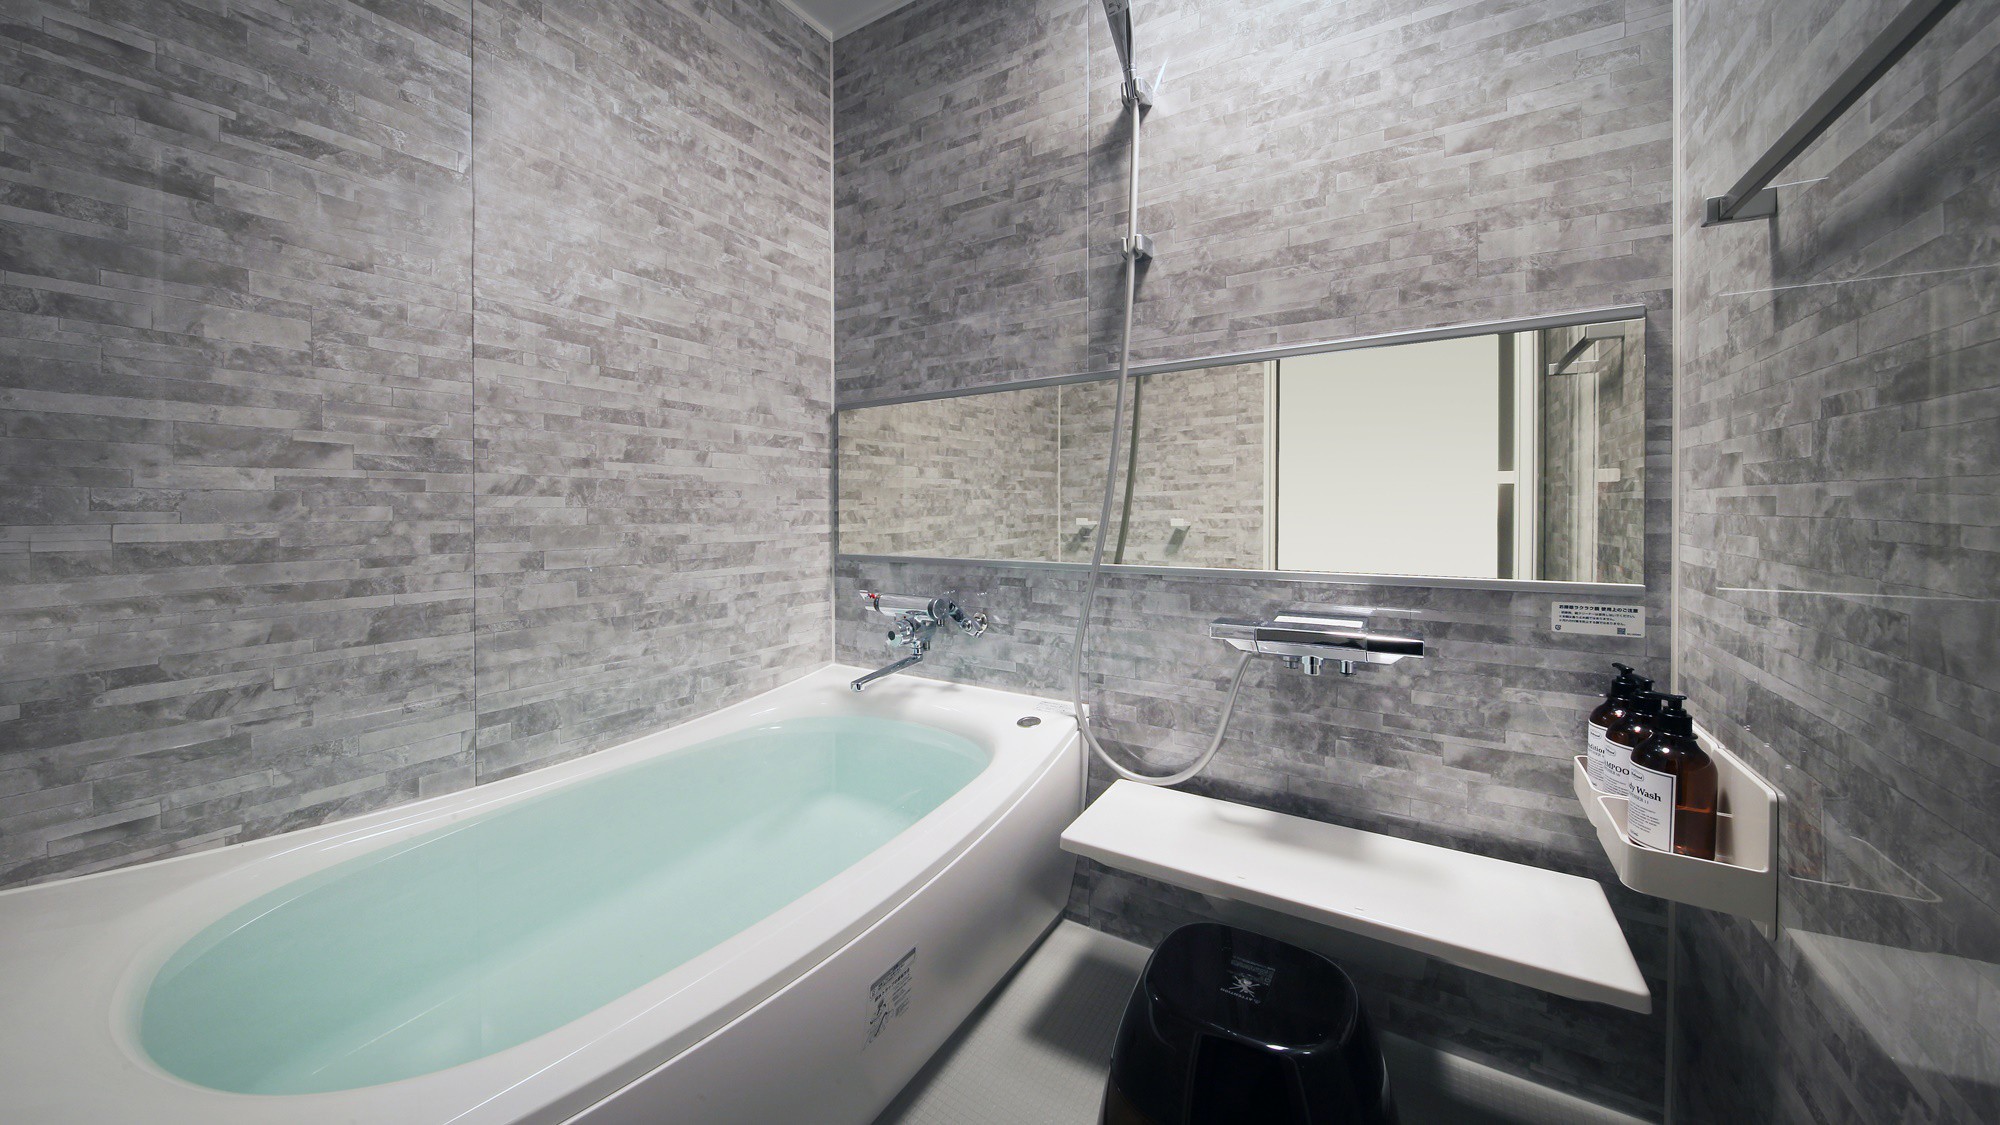 『冬月-とうげつ-』内風呂もお部屋のコンセプトに合わせた色で作られています